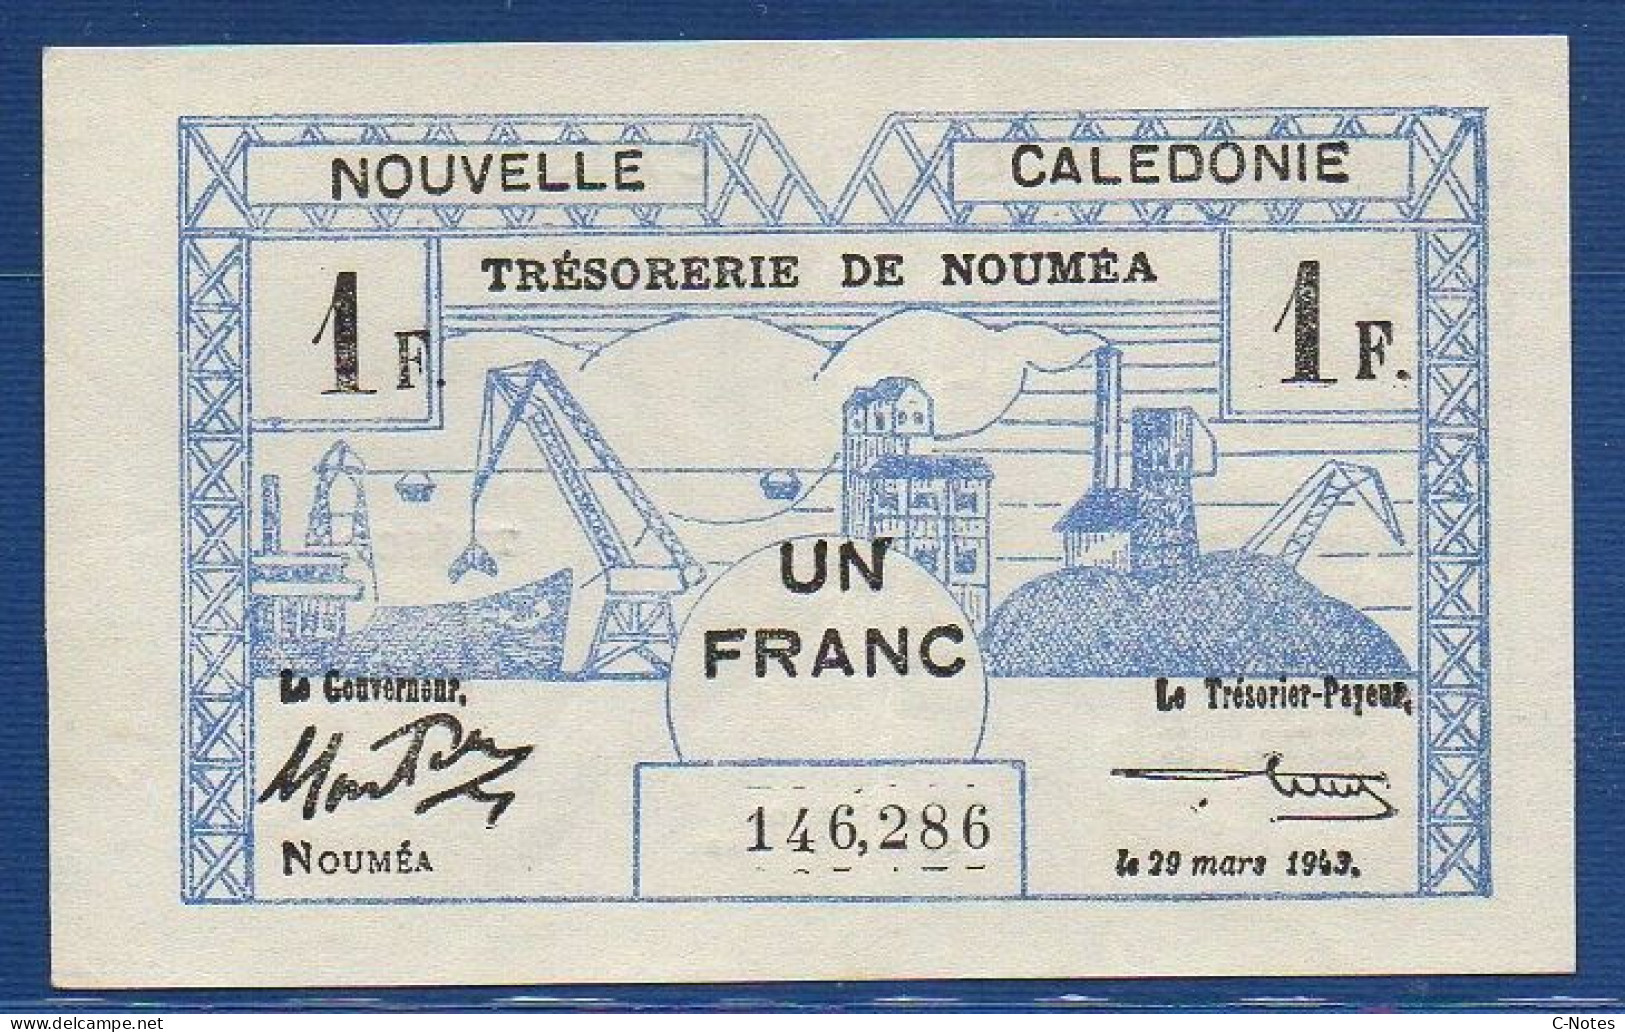 NEW CALEDONIA - Nouméa  - P.55a – 1 Franc 1943 XF/AU, S/n 146,286 - Numea (Nueva Caledonia 1873-1985)